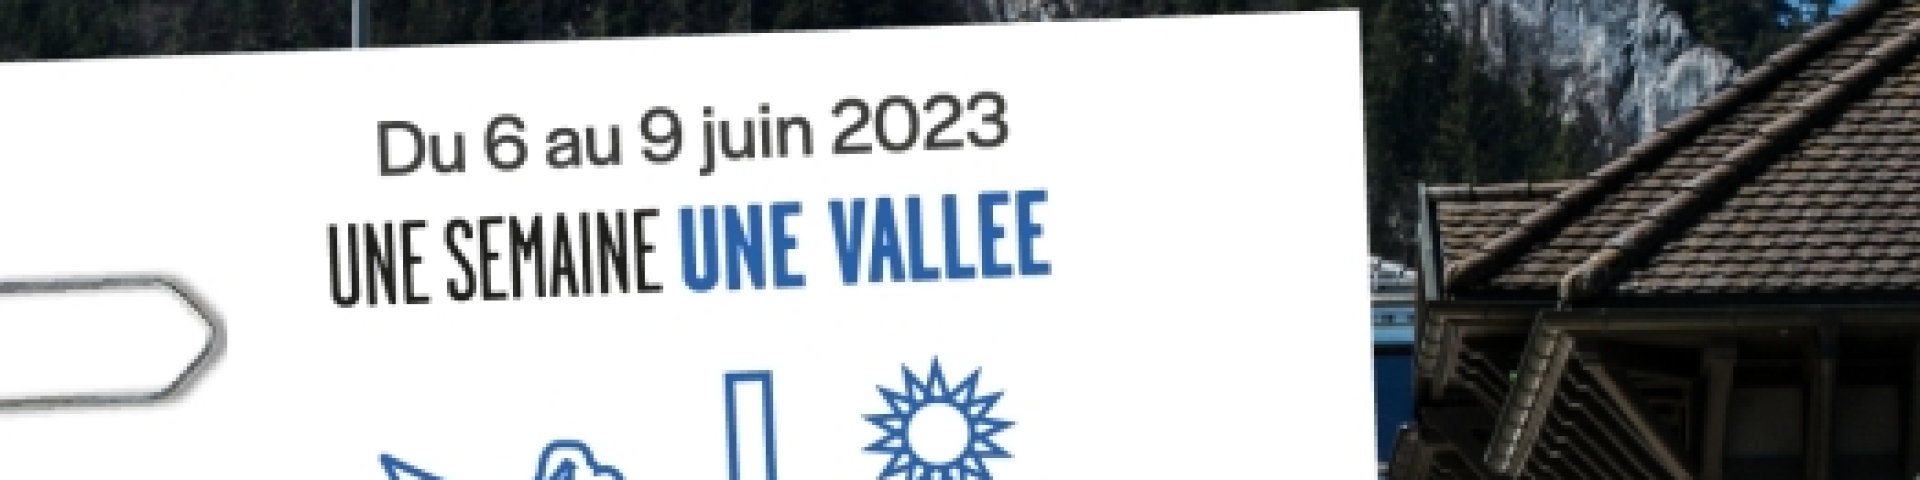 Val-de-Travers Arc Info vallée 2023